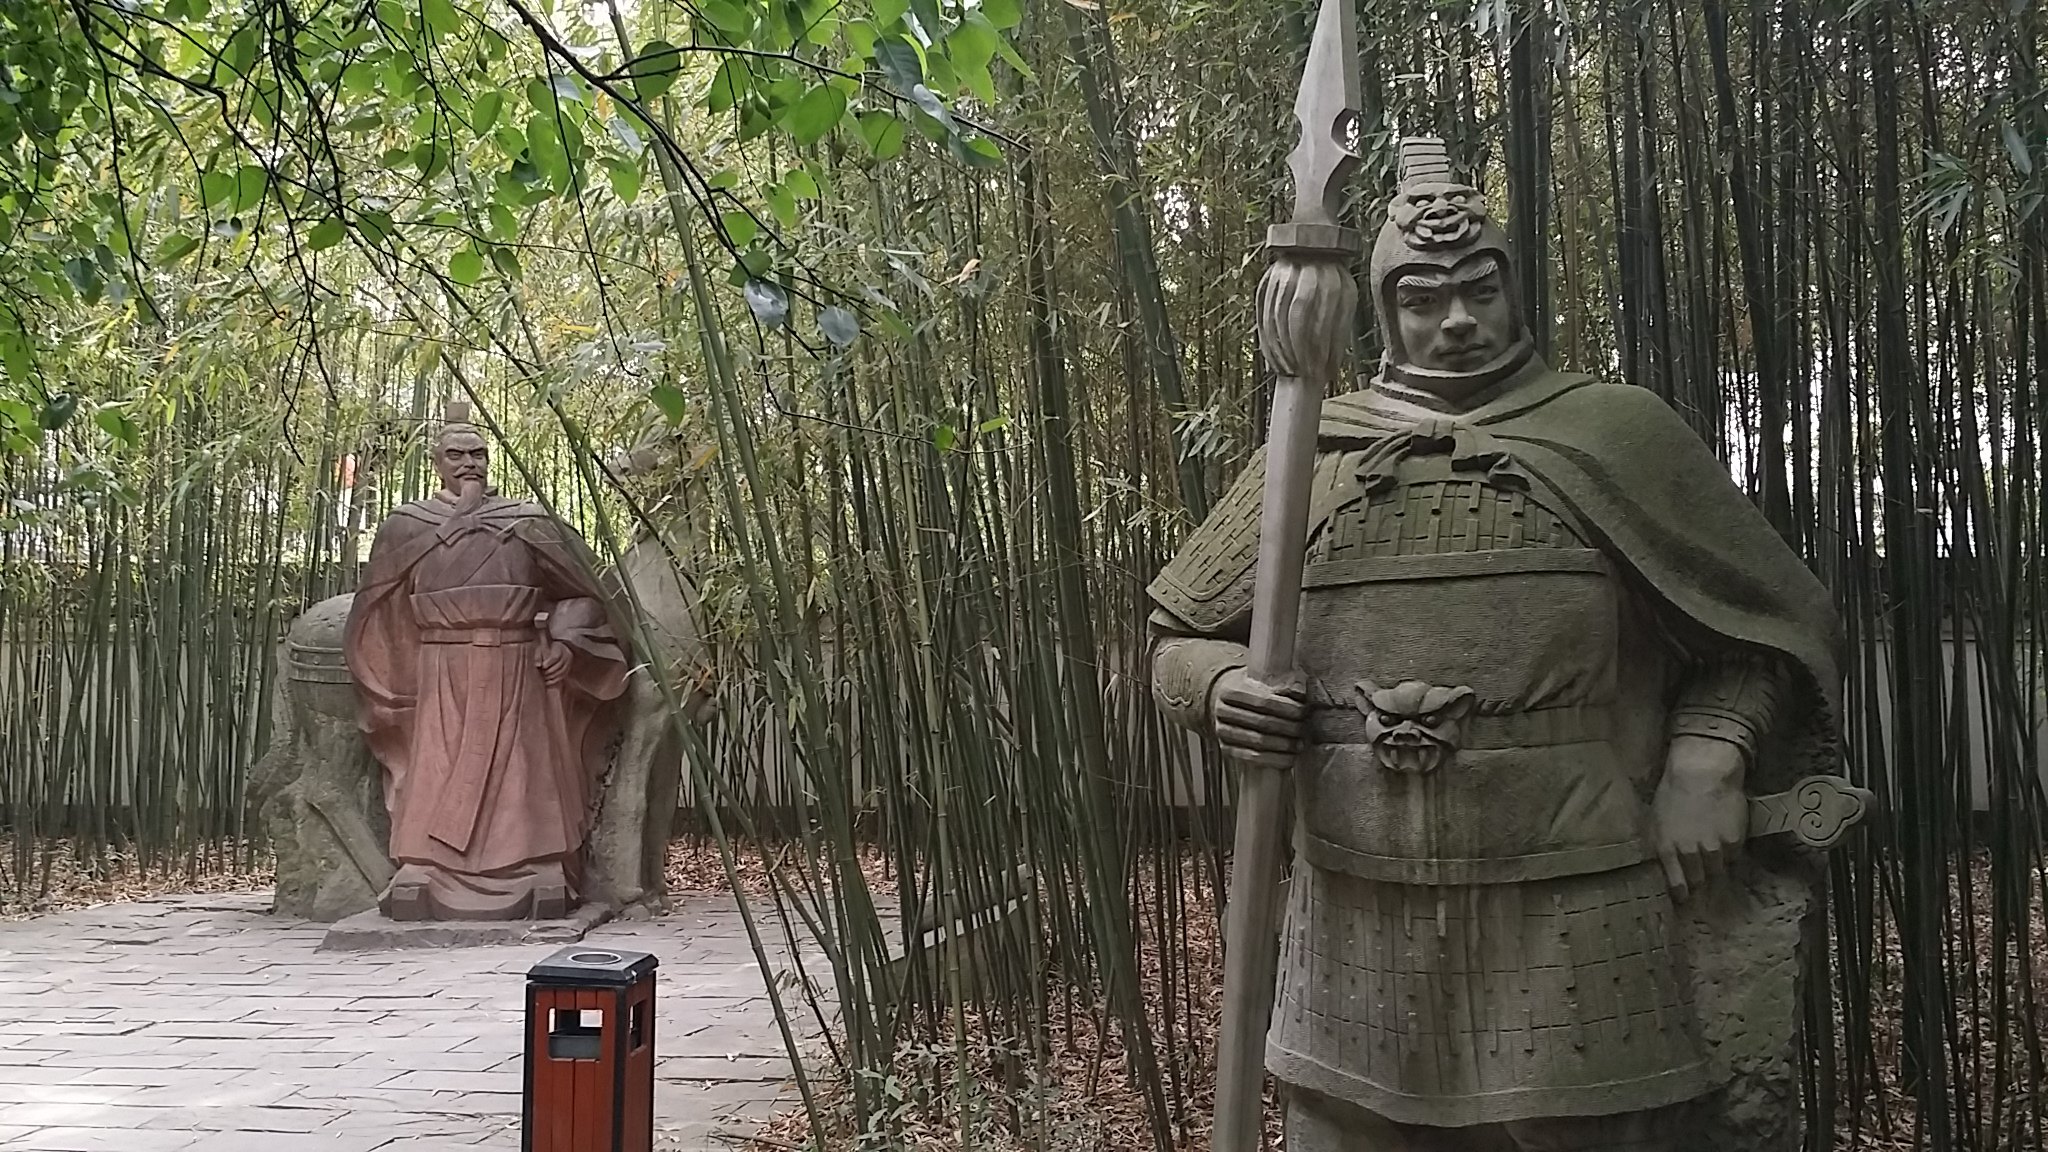 园内共有蜀汉人物雕像11尊,除蜀汉先主刘备以外,还有张飞,马超,黄忠